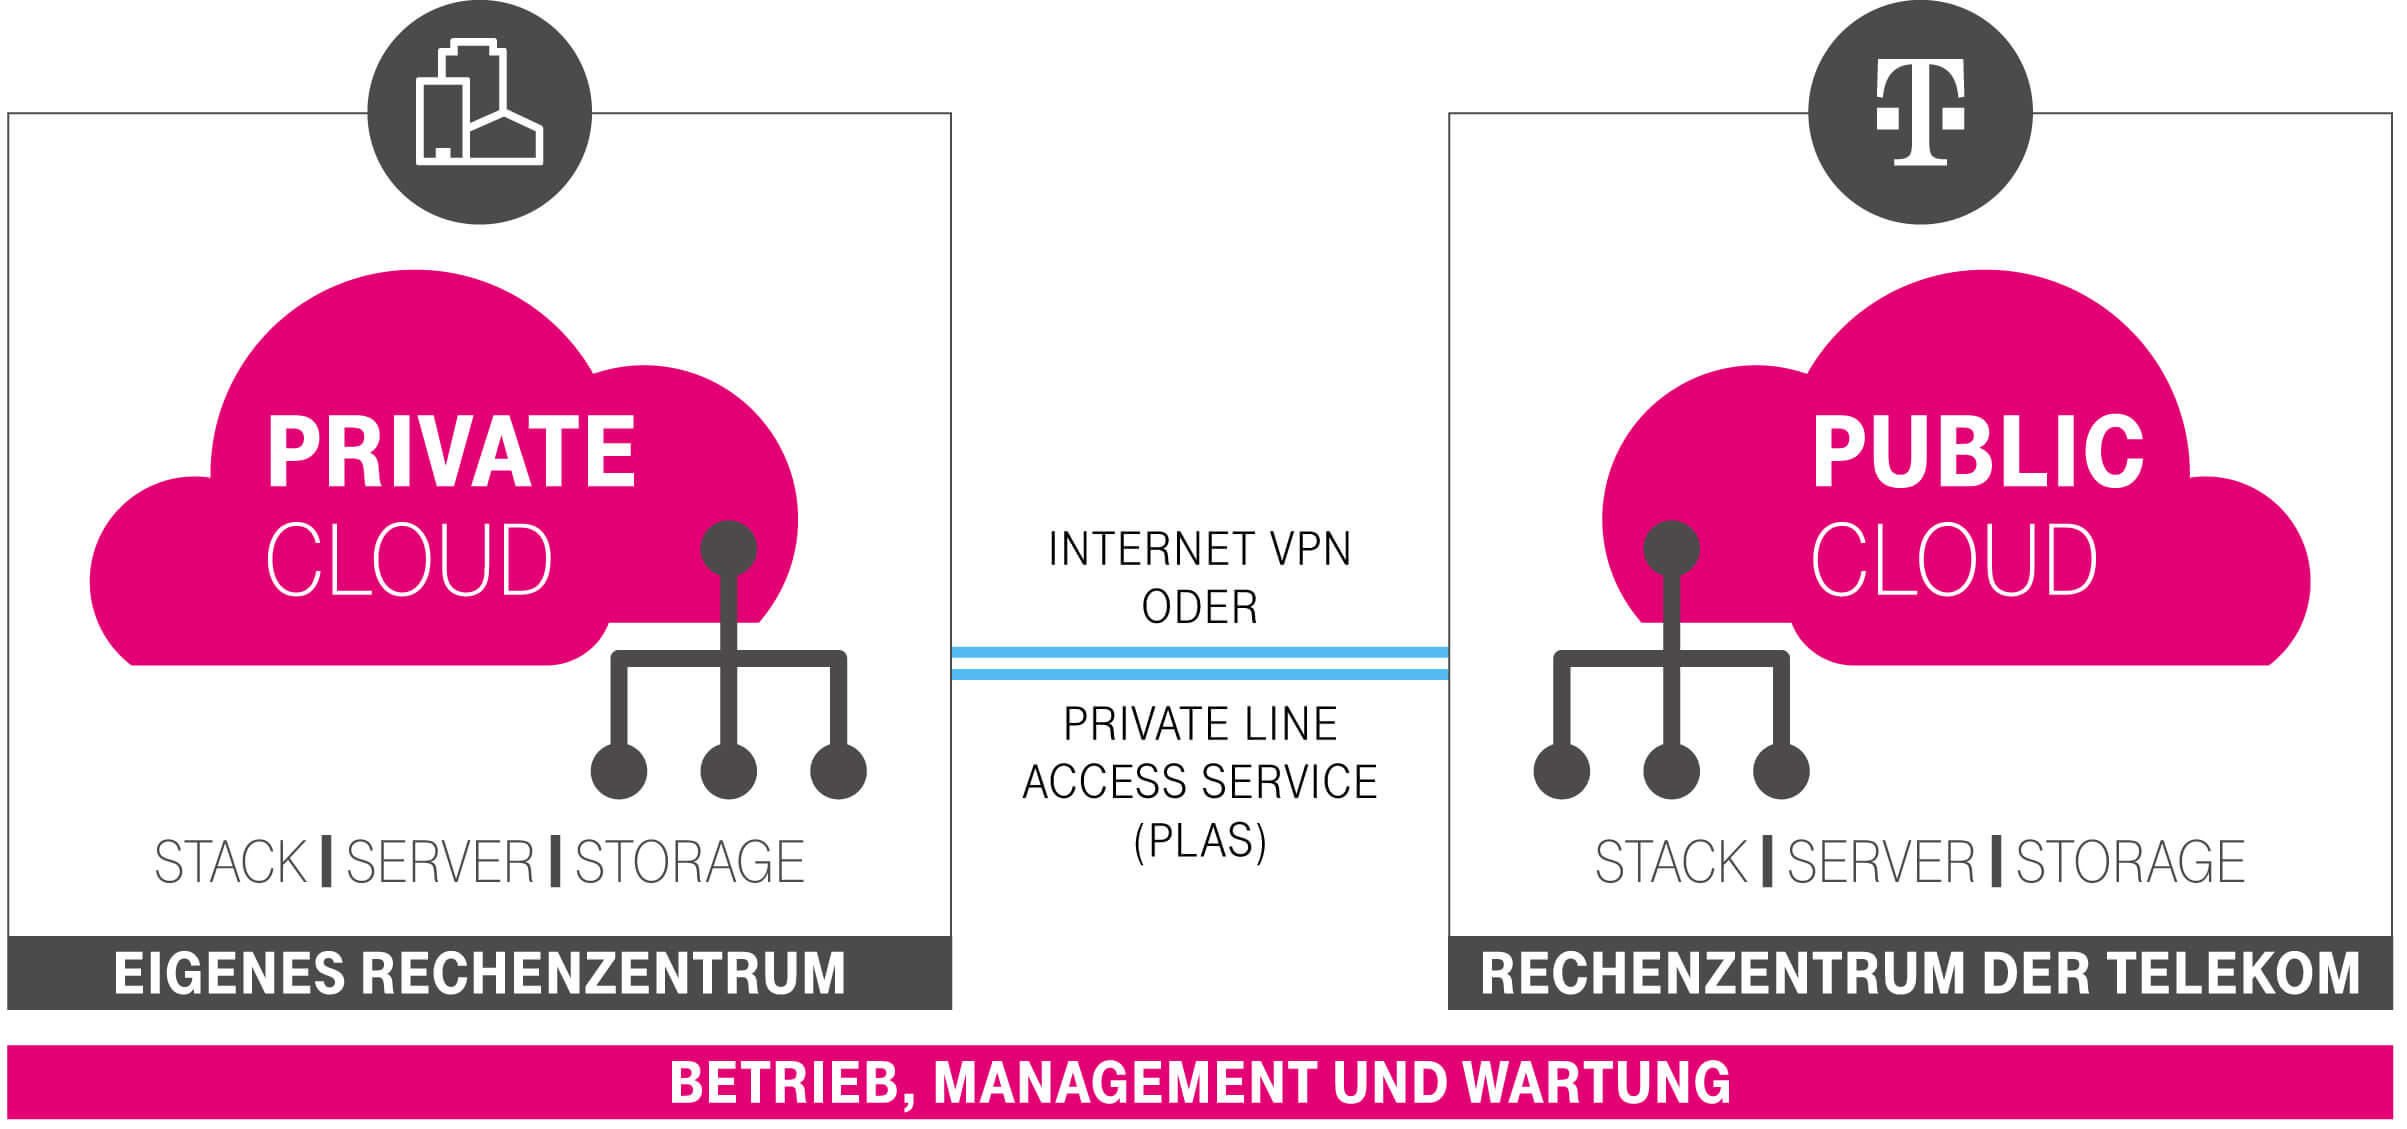 Infografik, die zeigt, wie die Open Telekom Cloud Hybrid aufgebaut ist, mit Private Cloud im eigenen Rechenzentrum.